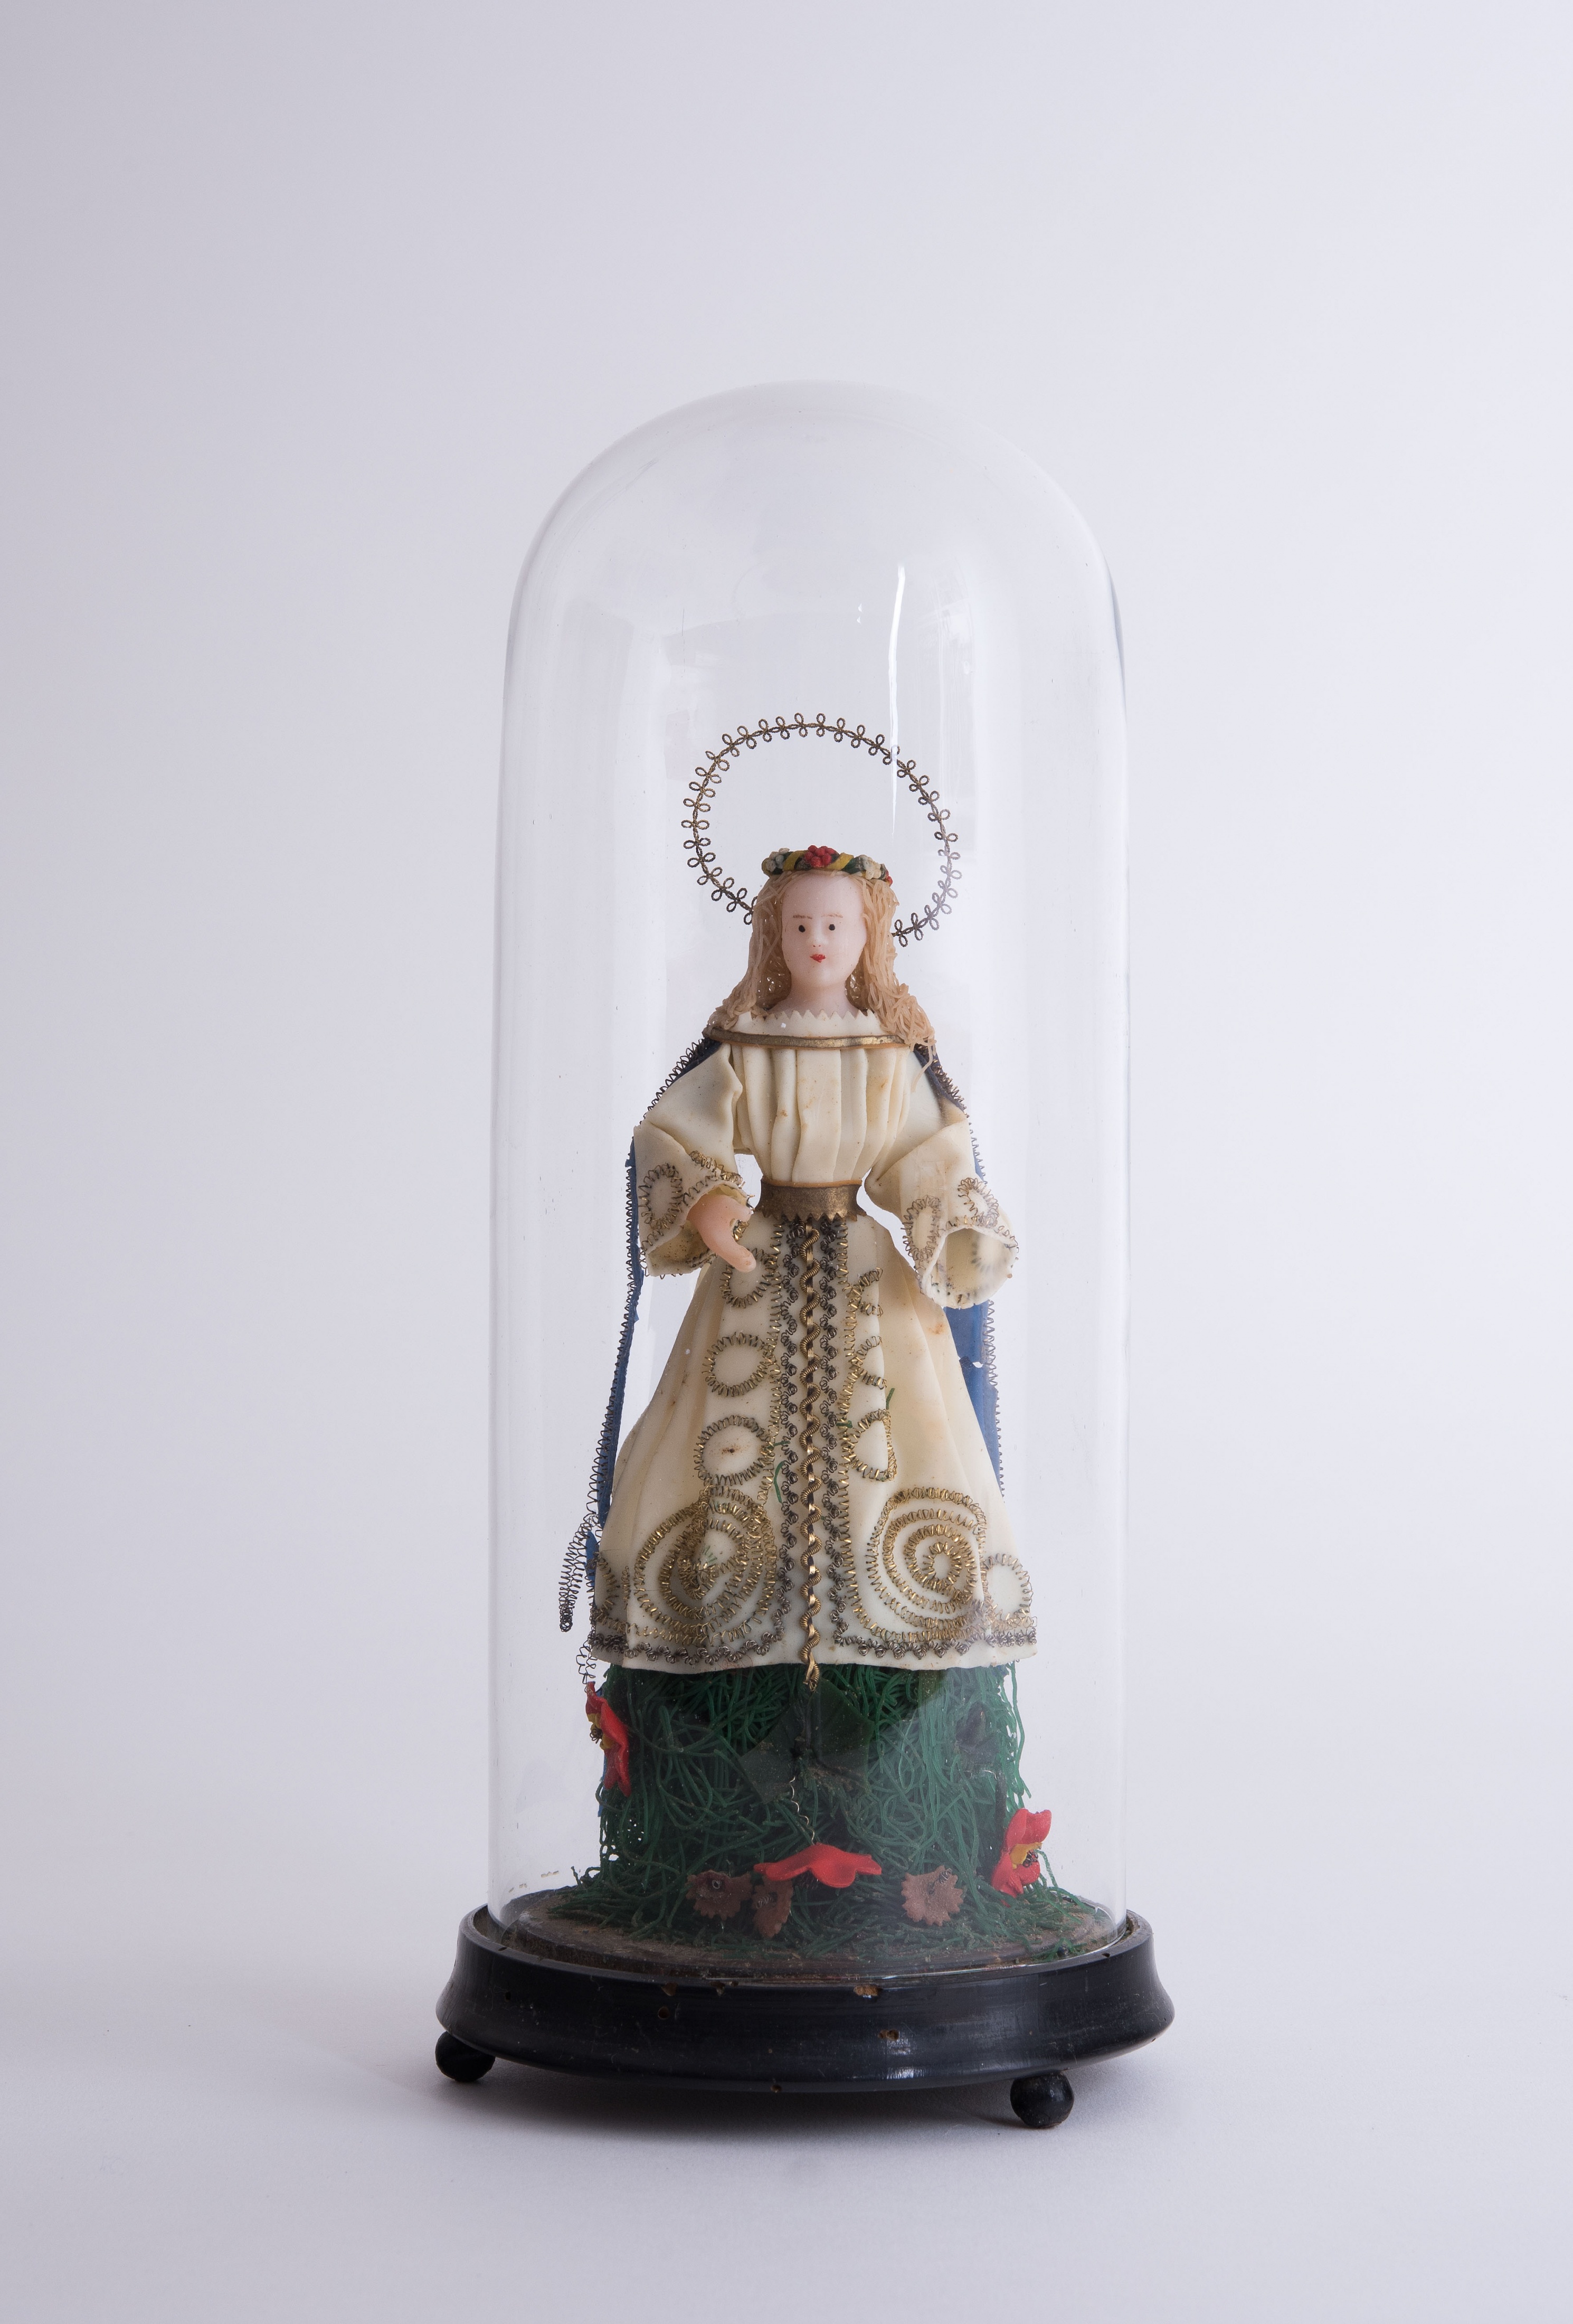 Mária szobor üvegbúra alatt (Mecseknádasdi Német Nemzetiségi Tájház CC BY-NC-SA)